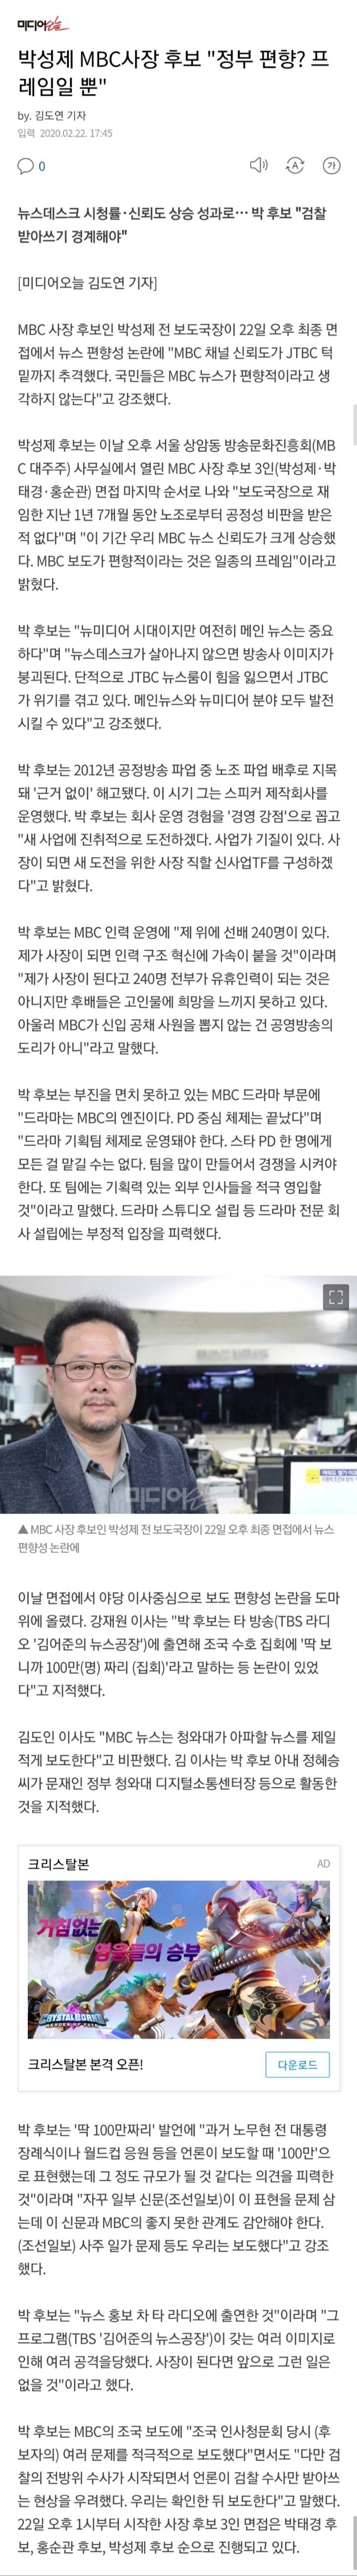 이번 MBC사장이 된 박성제 전 보도국장의 편향적 보도에 대한 생각 | 인스티즈